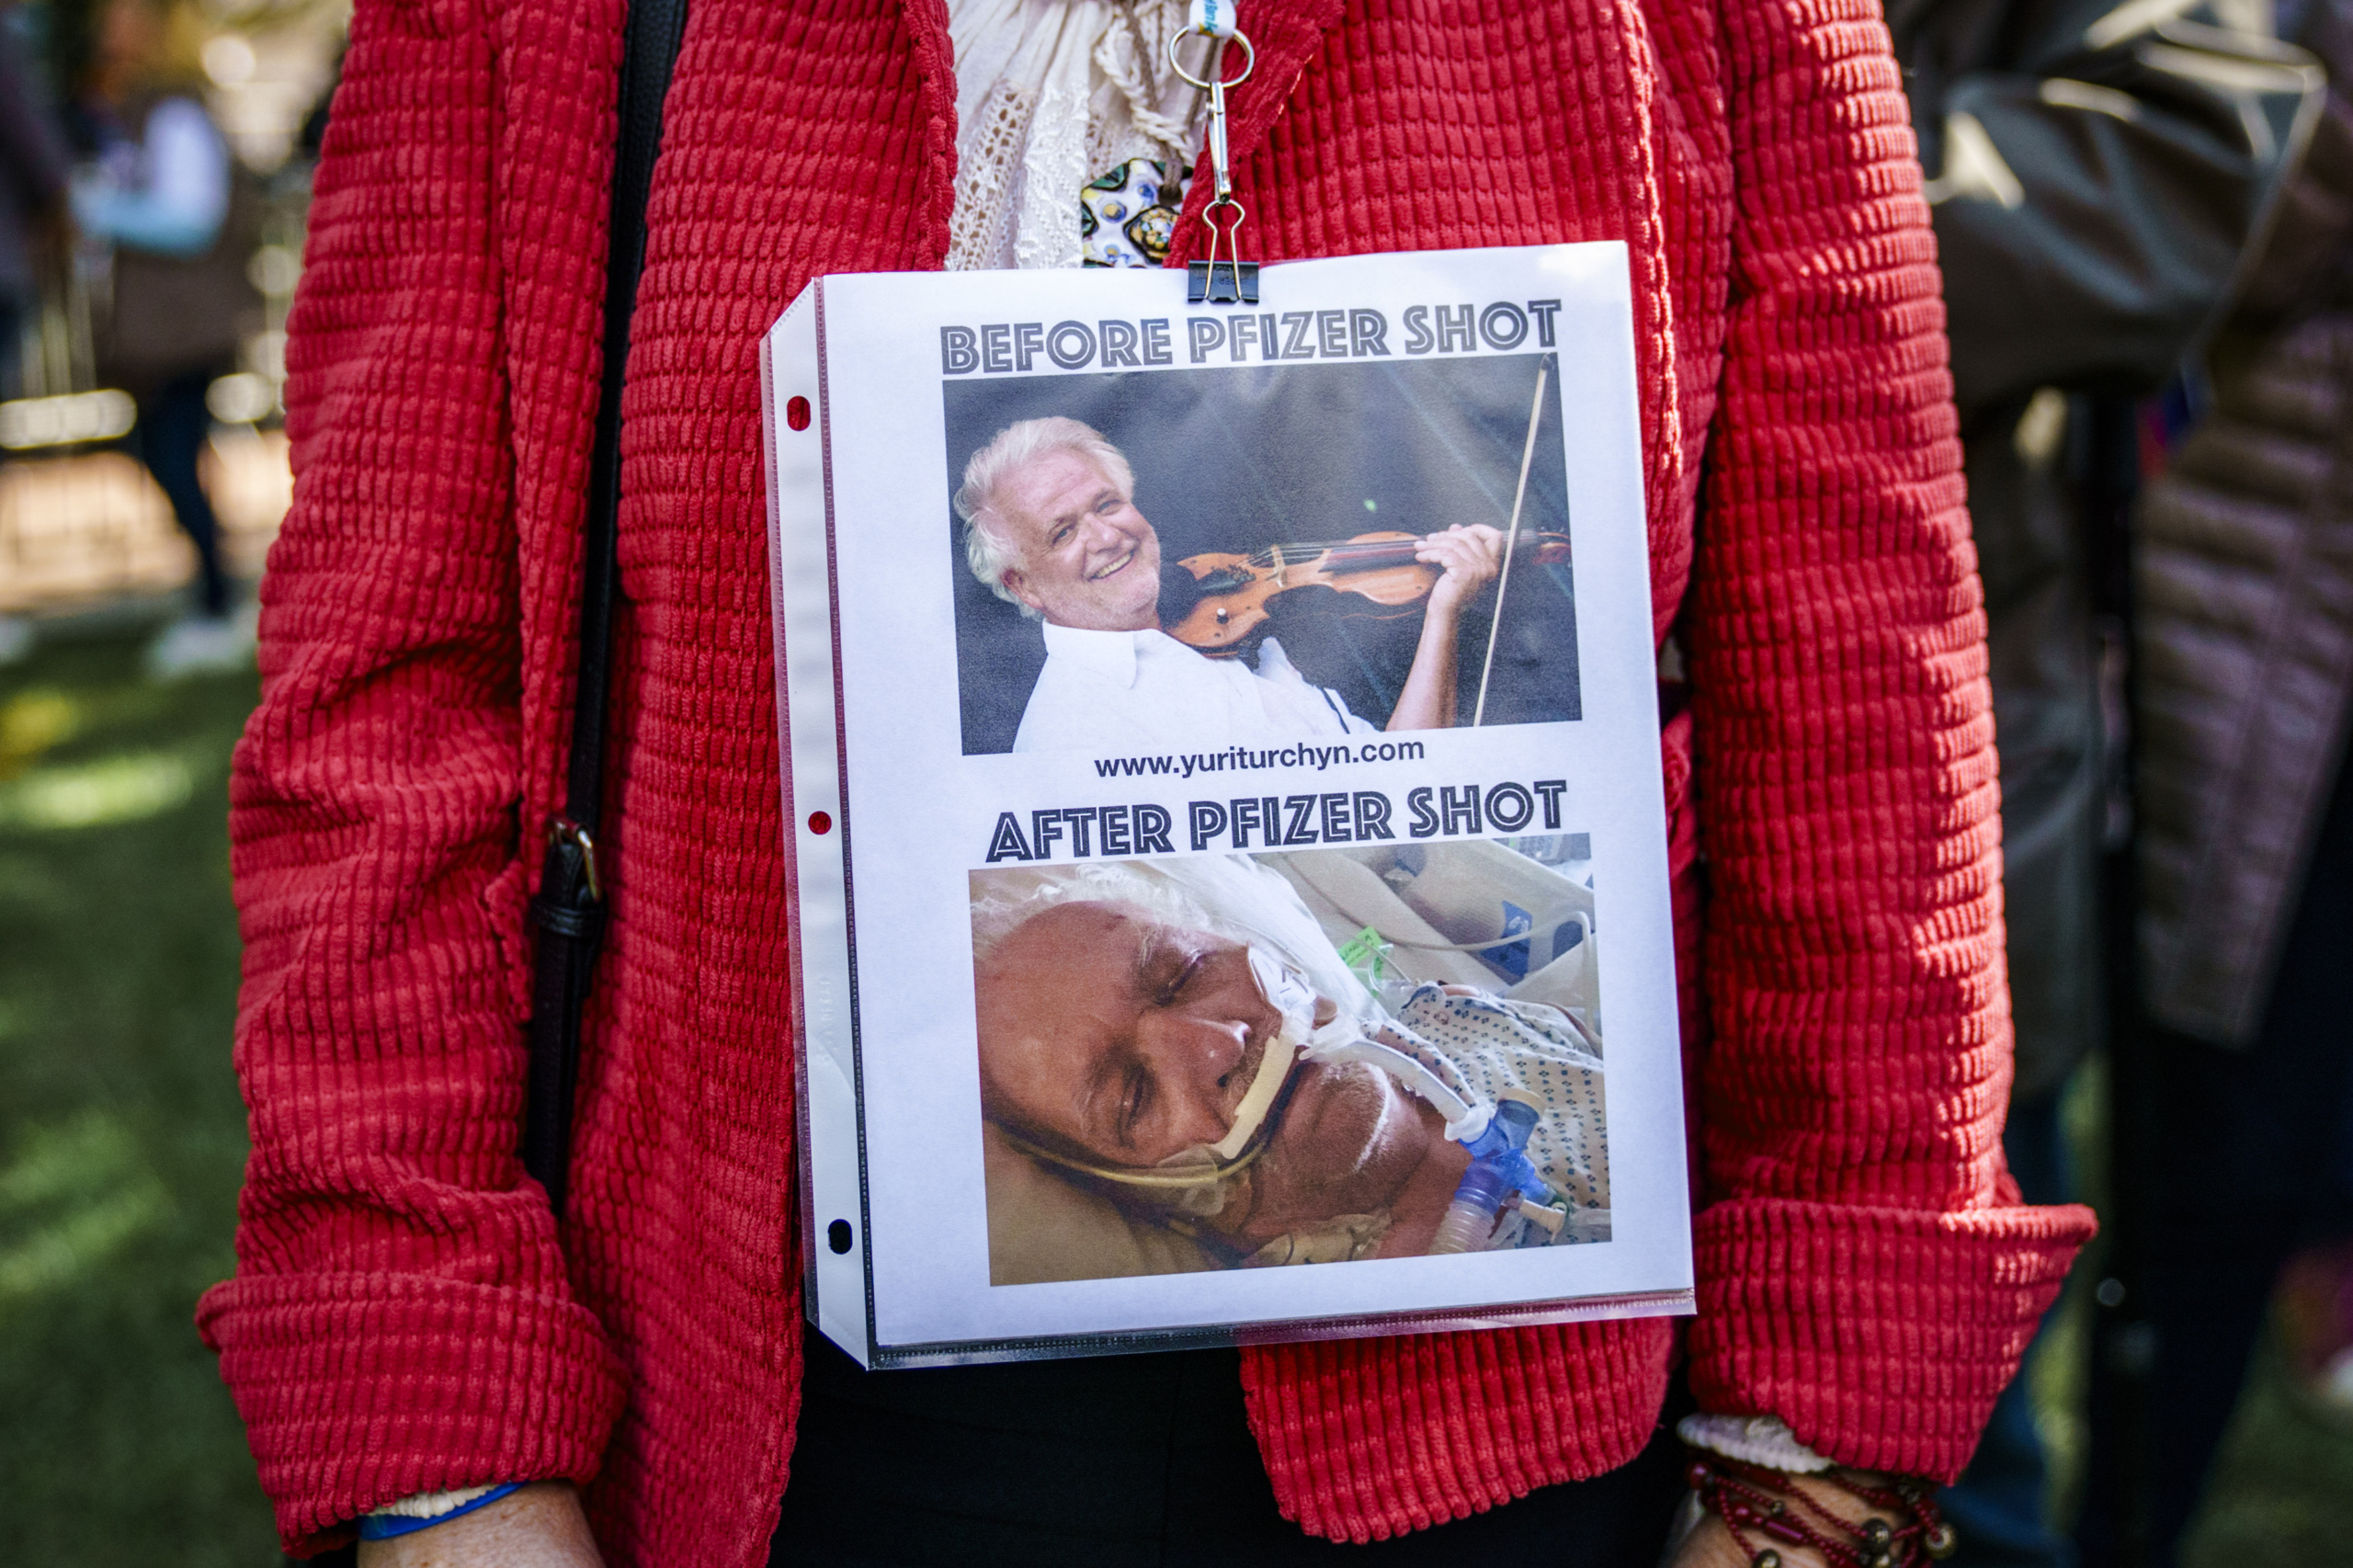 Một người phụ nữ trưng bày những bức ảnh của nghệ sĩ vĩ cầm Yury Turchyn trước và sau khi chích vaccine COVID-19, tại cuộc họp báo dành cho ứng cử viên tổng thống Robert F. Kennedy Jr. ở Philadelphia hôm 09/10/2023. (Ảnh: Jessica Kourkounis/Getty Images)